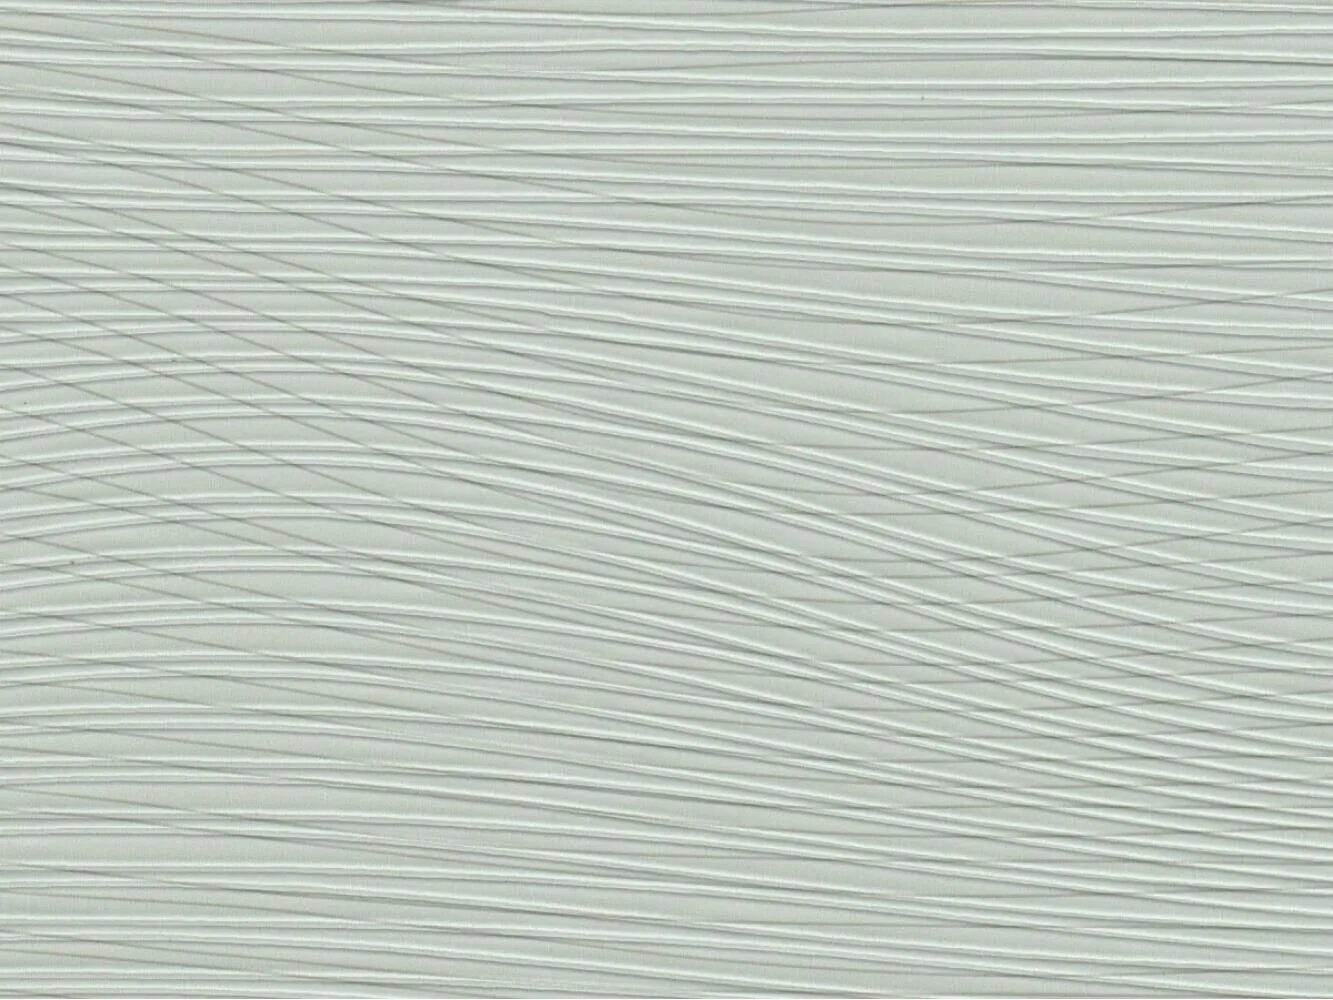 Панель 370*2700 ПВХ ламинир. Век Харлей серый 0531. Ламинированная панель ПВХ век Штромболи серый. Ламинированные панели век. МДФ панели серые. Панели веко ламинированные